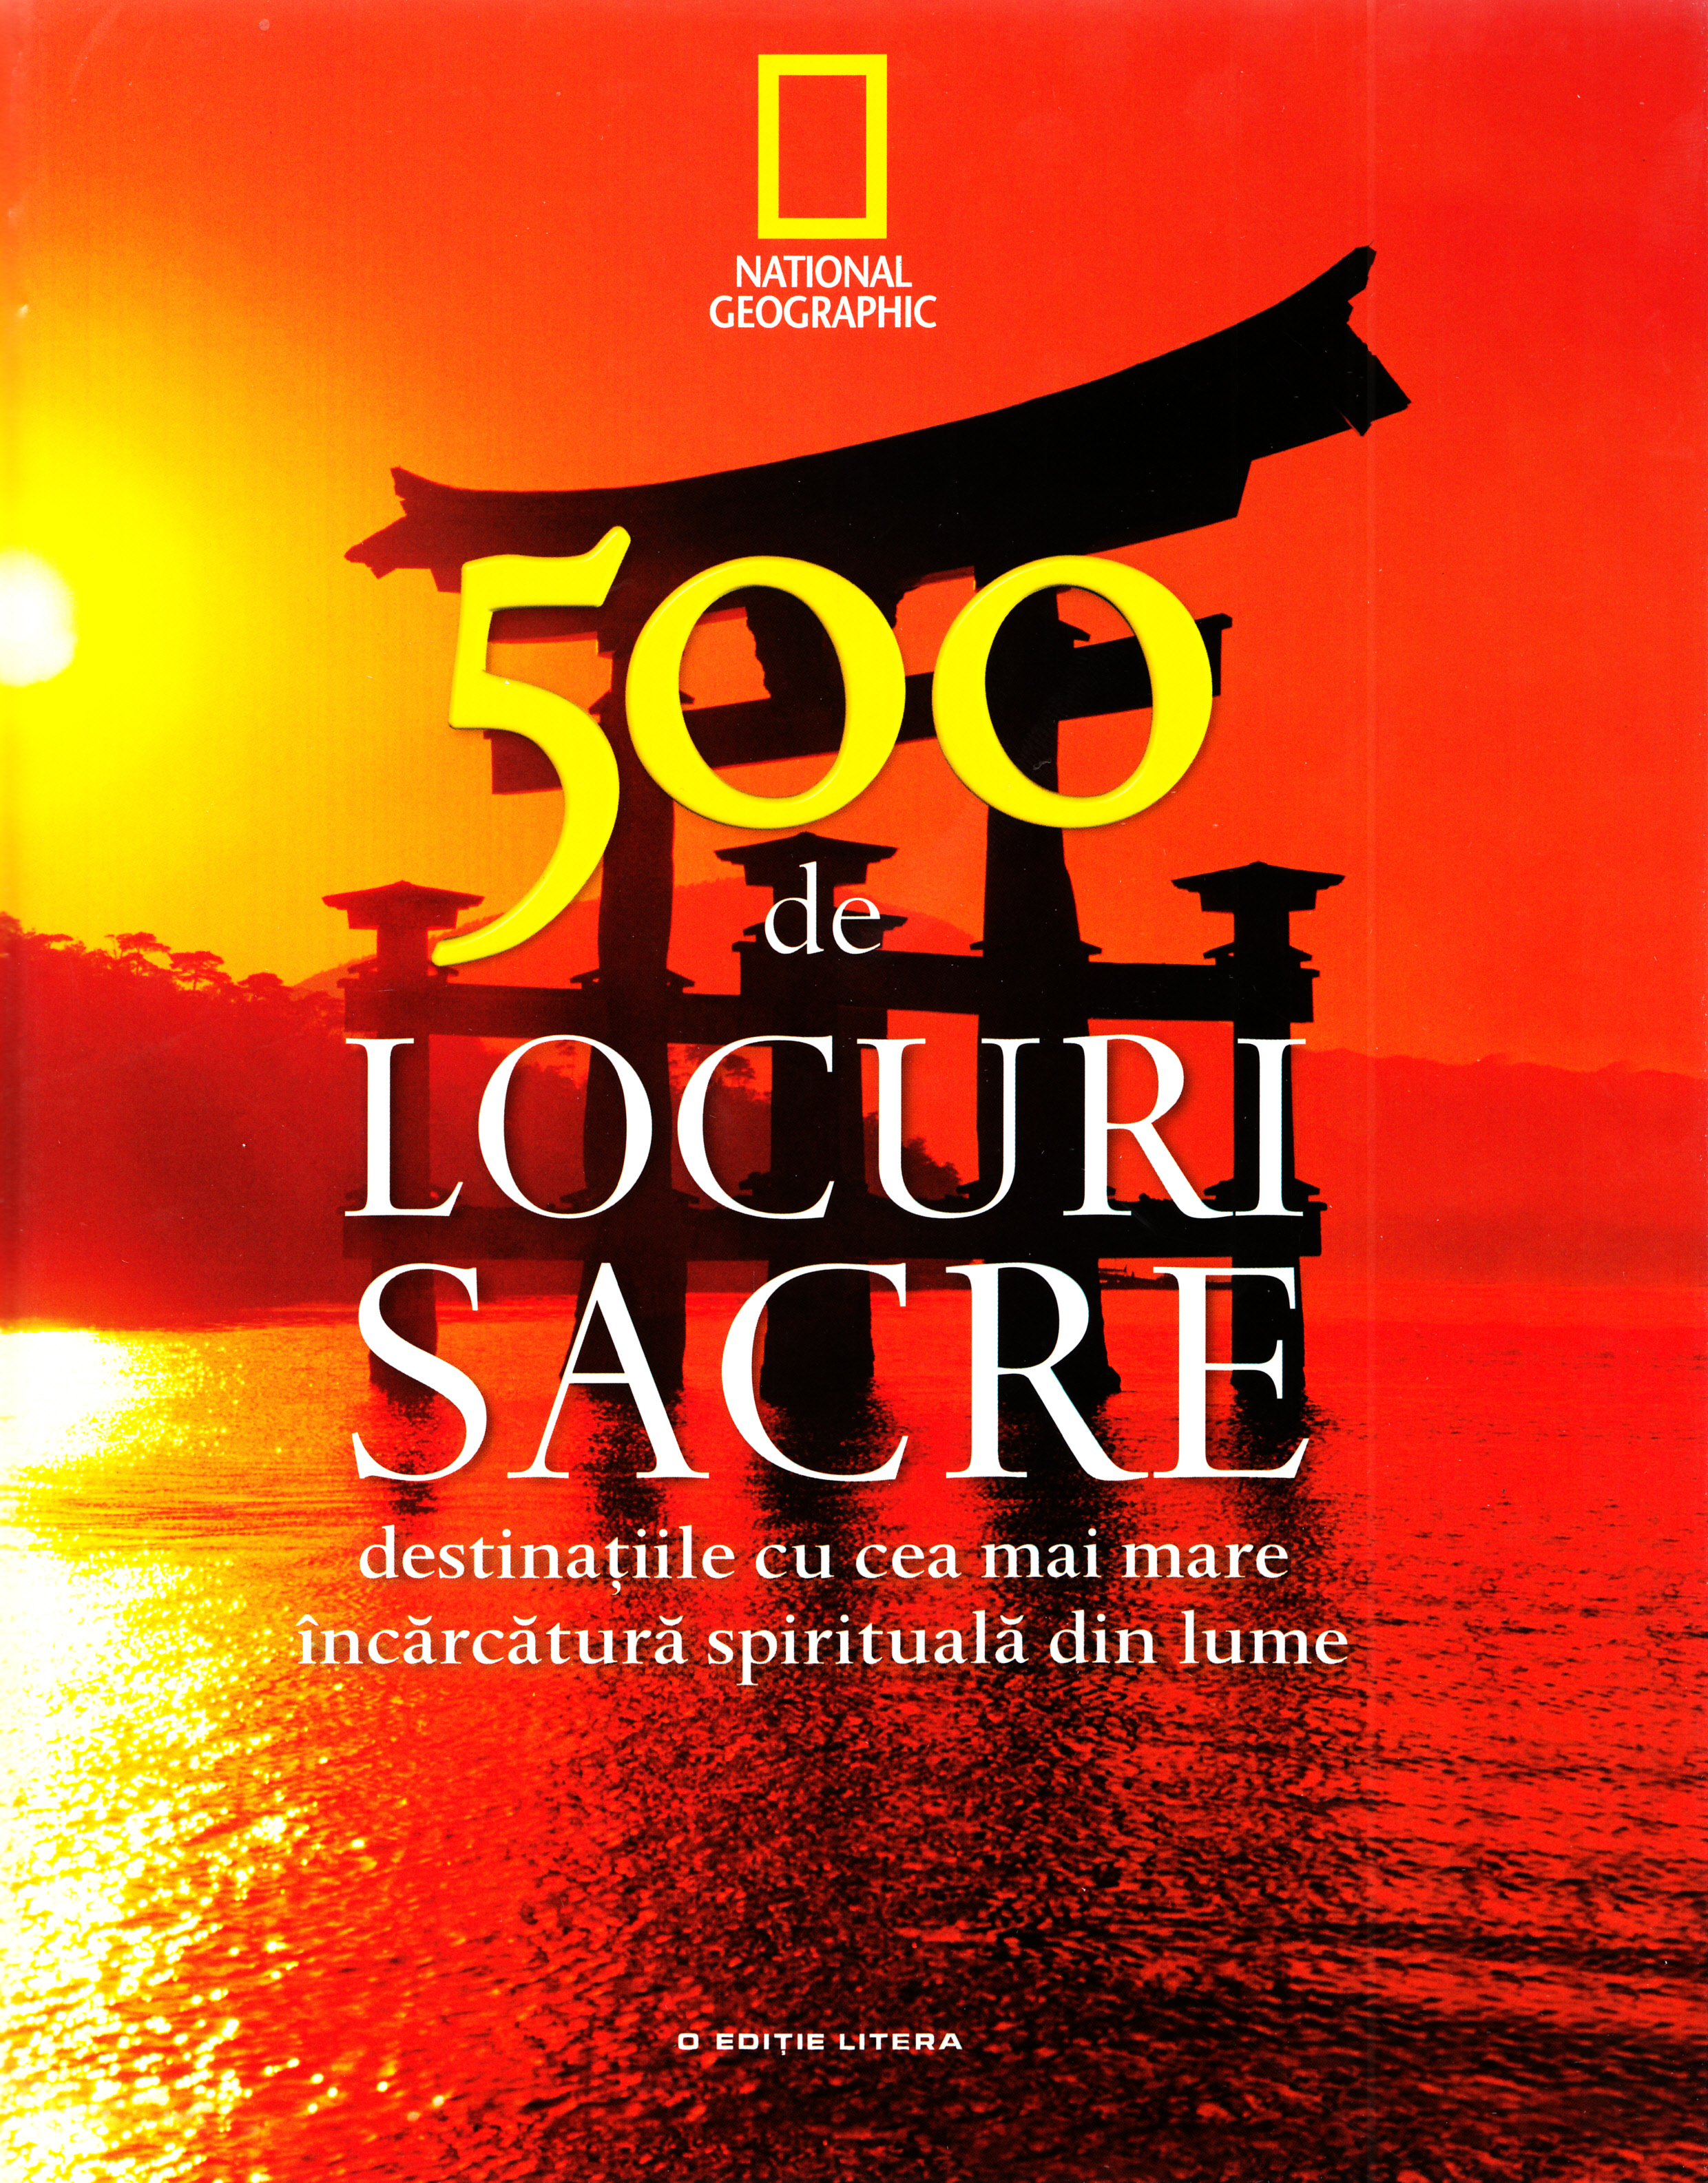 Set 500 de locuri sacre (4 carti)